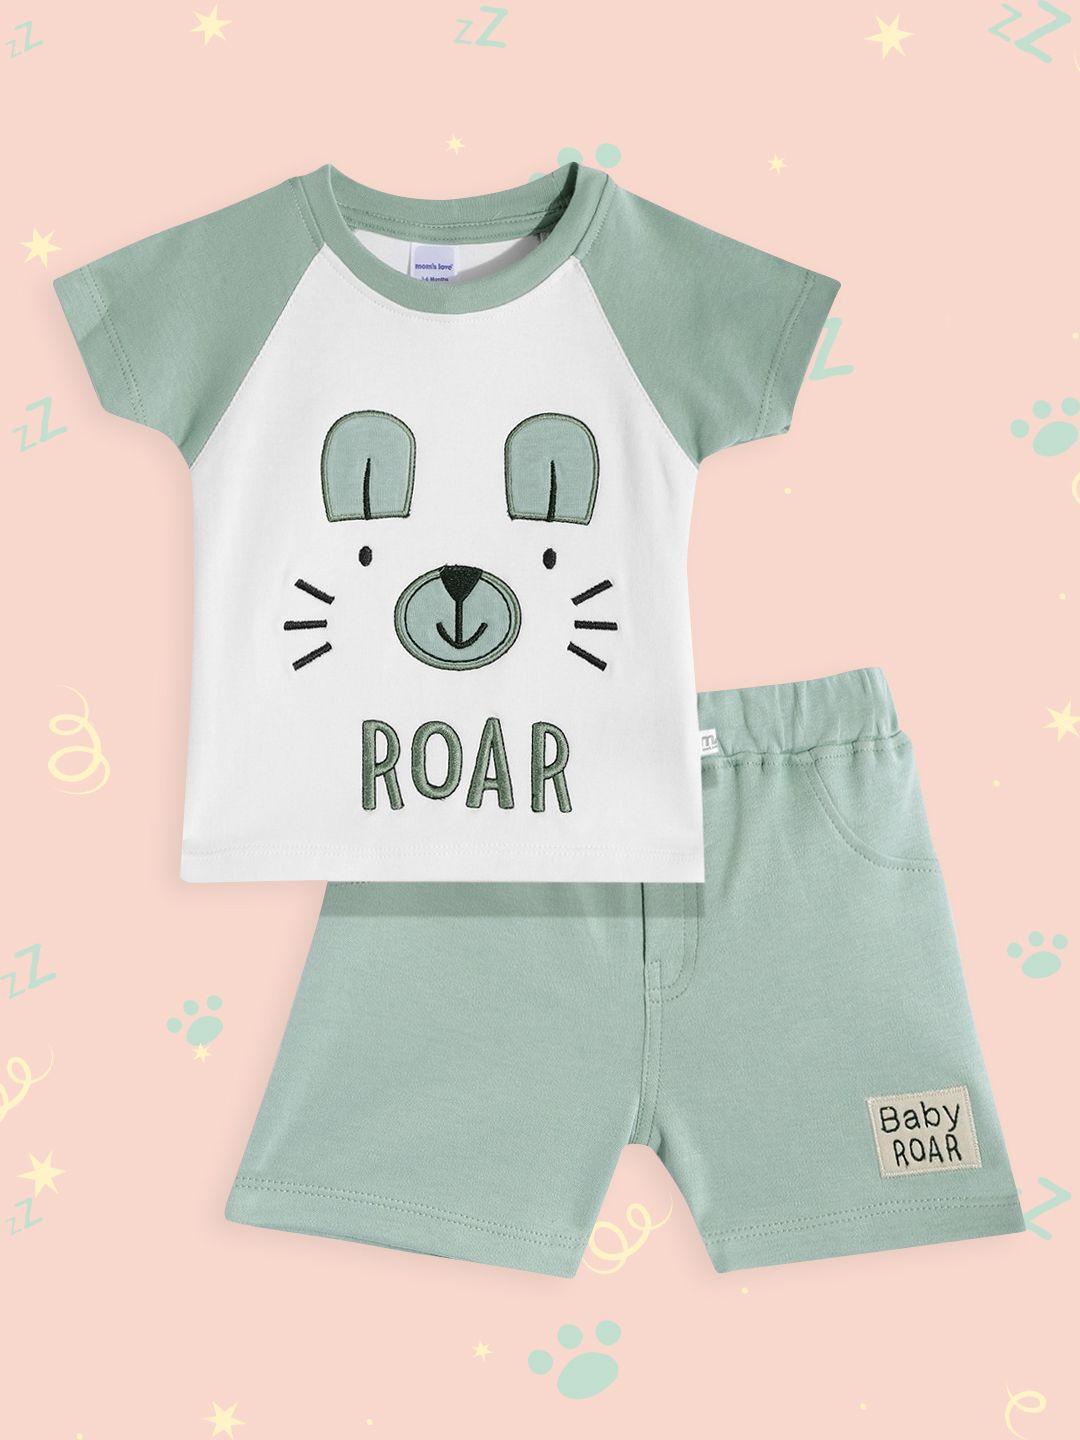 moms love infant boys white & mint green graphic applique cotton clothing set